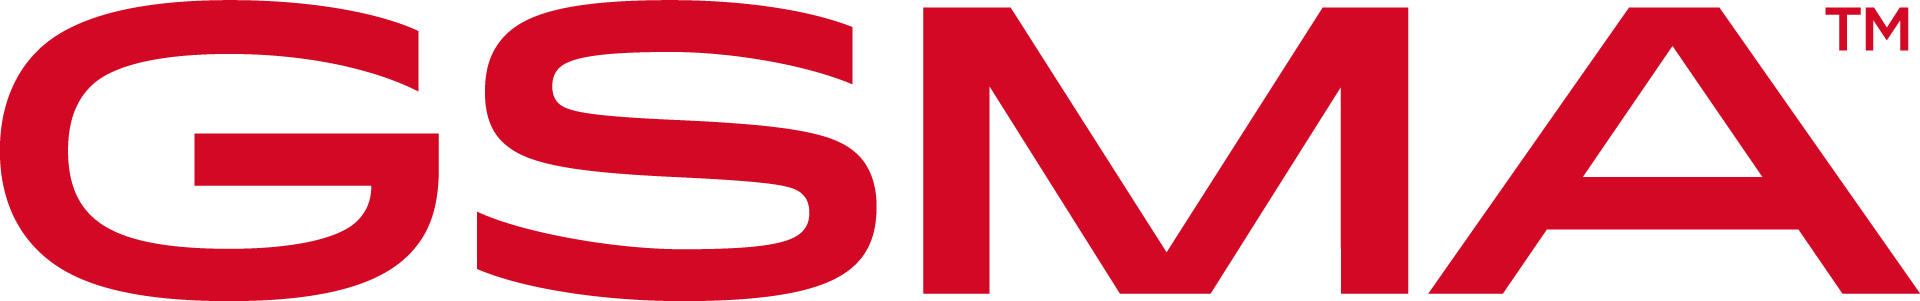 GSMA-Logo-Red-CMYK